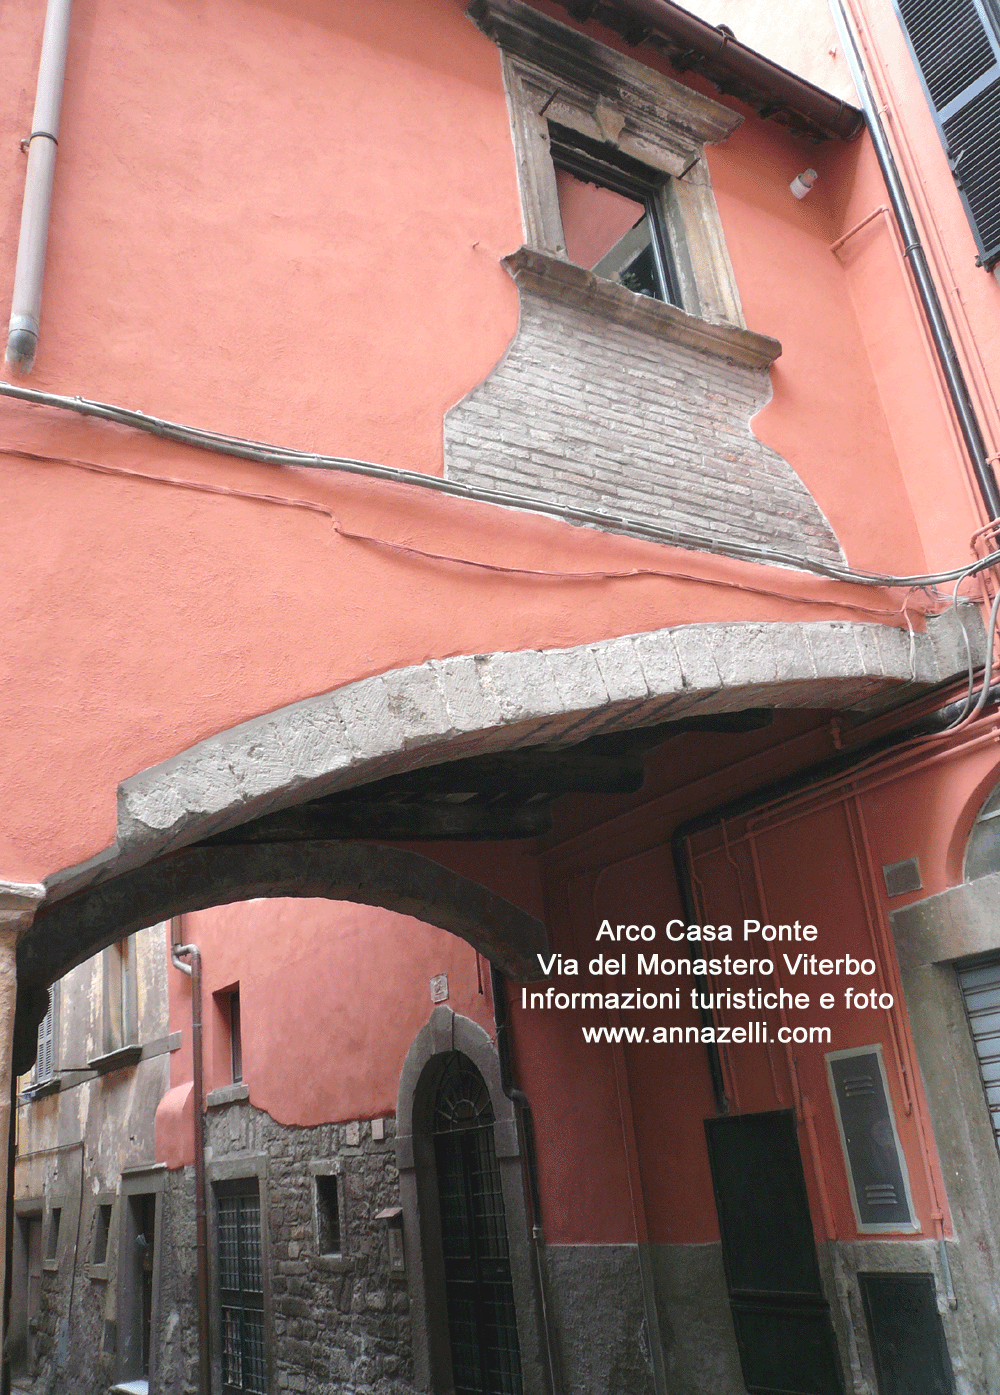 arco casa ponte a via del monastero viterbo info e foto anna zelli